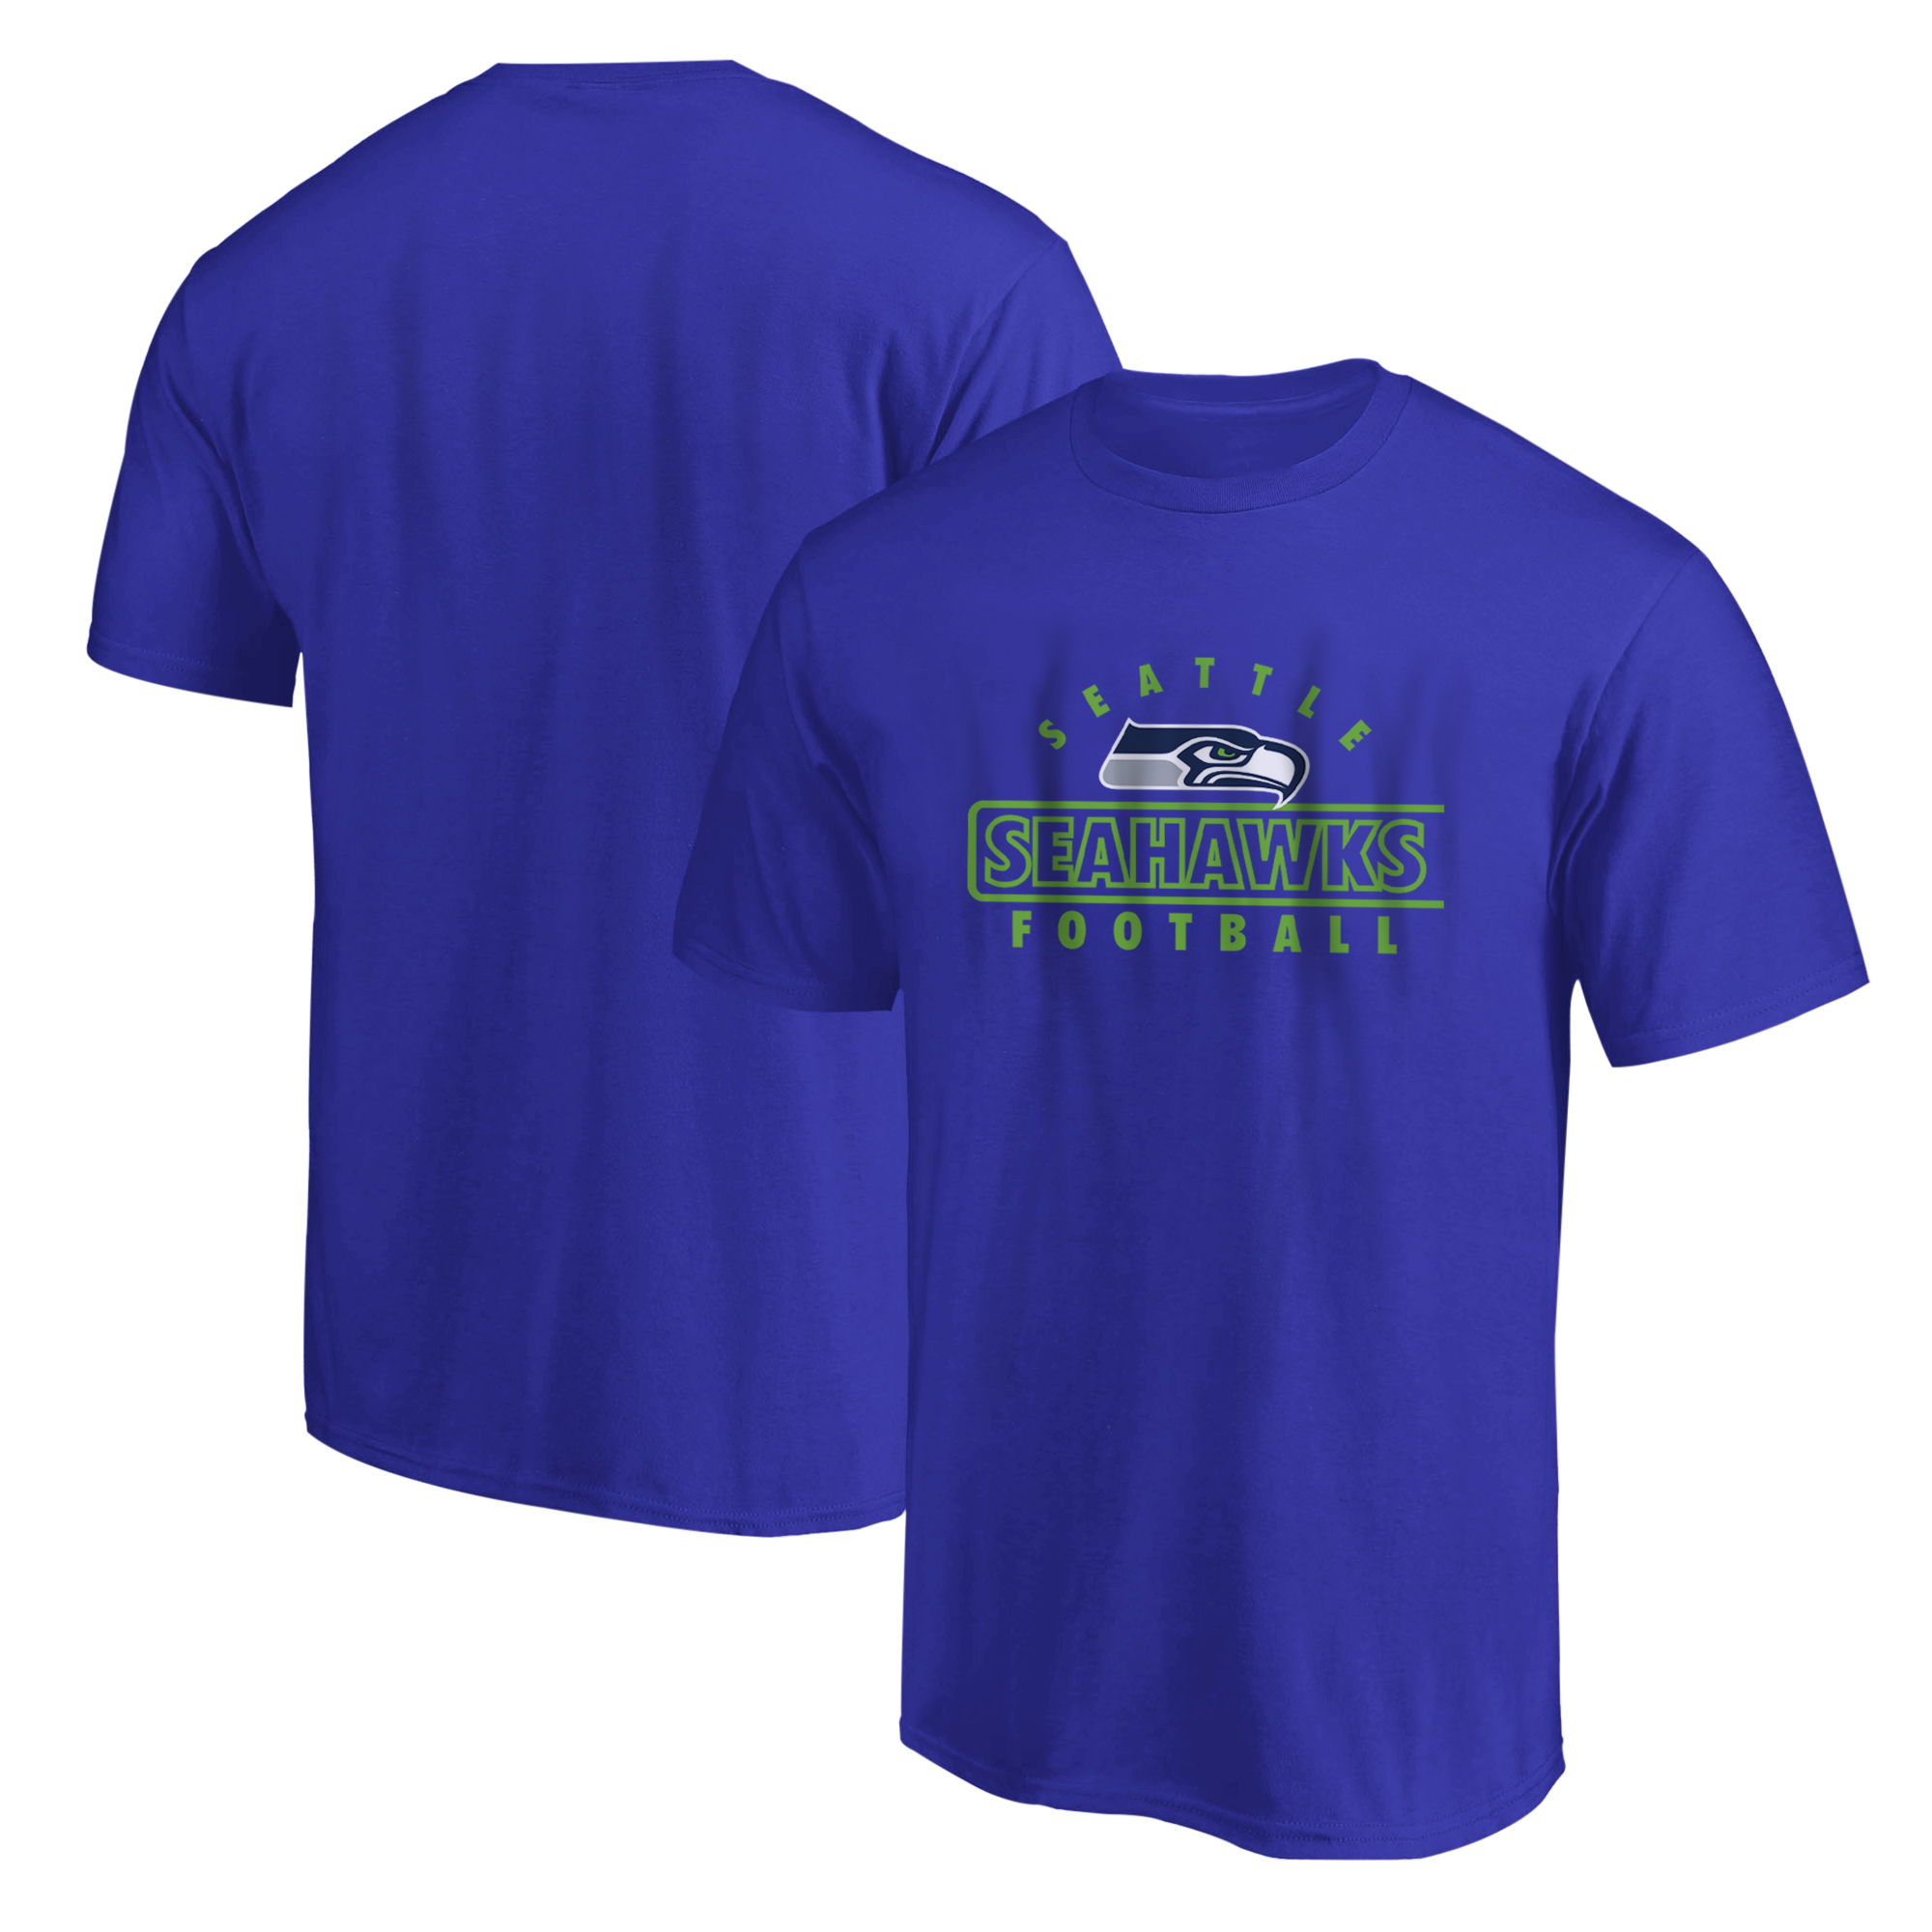 Seattle Seahawks Tshirt (TSH-BLU-6025-SEAHAWKS)